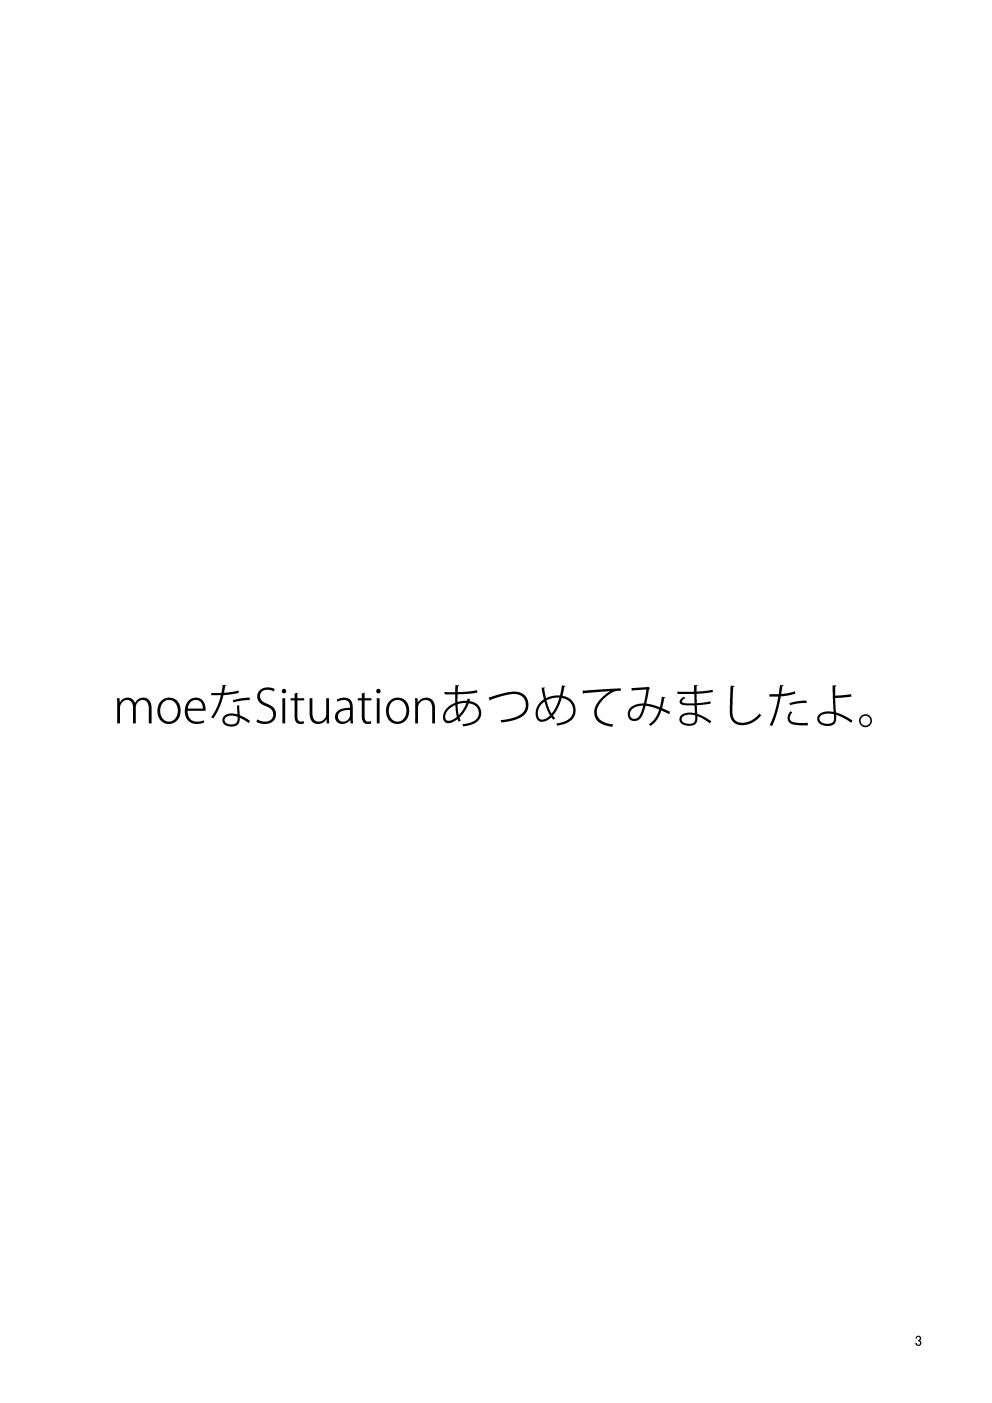 Una tranquila situación Moe - 2